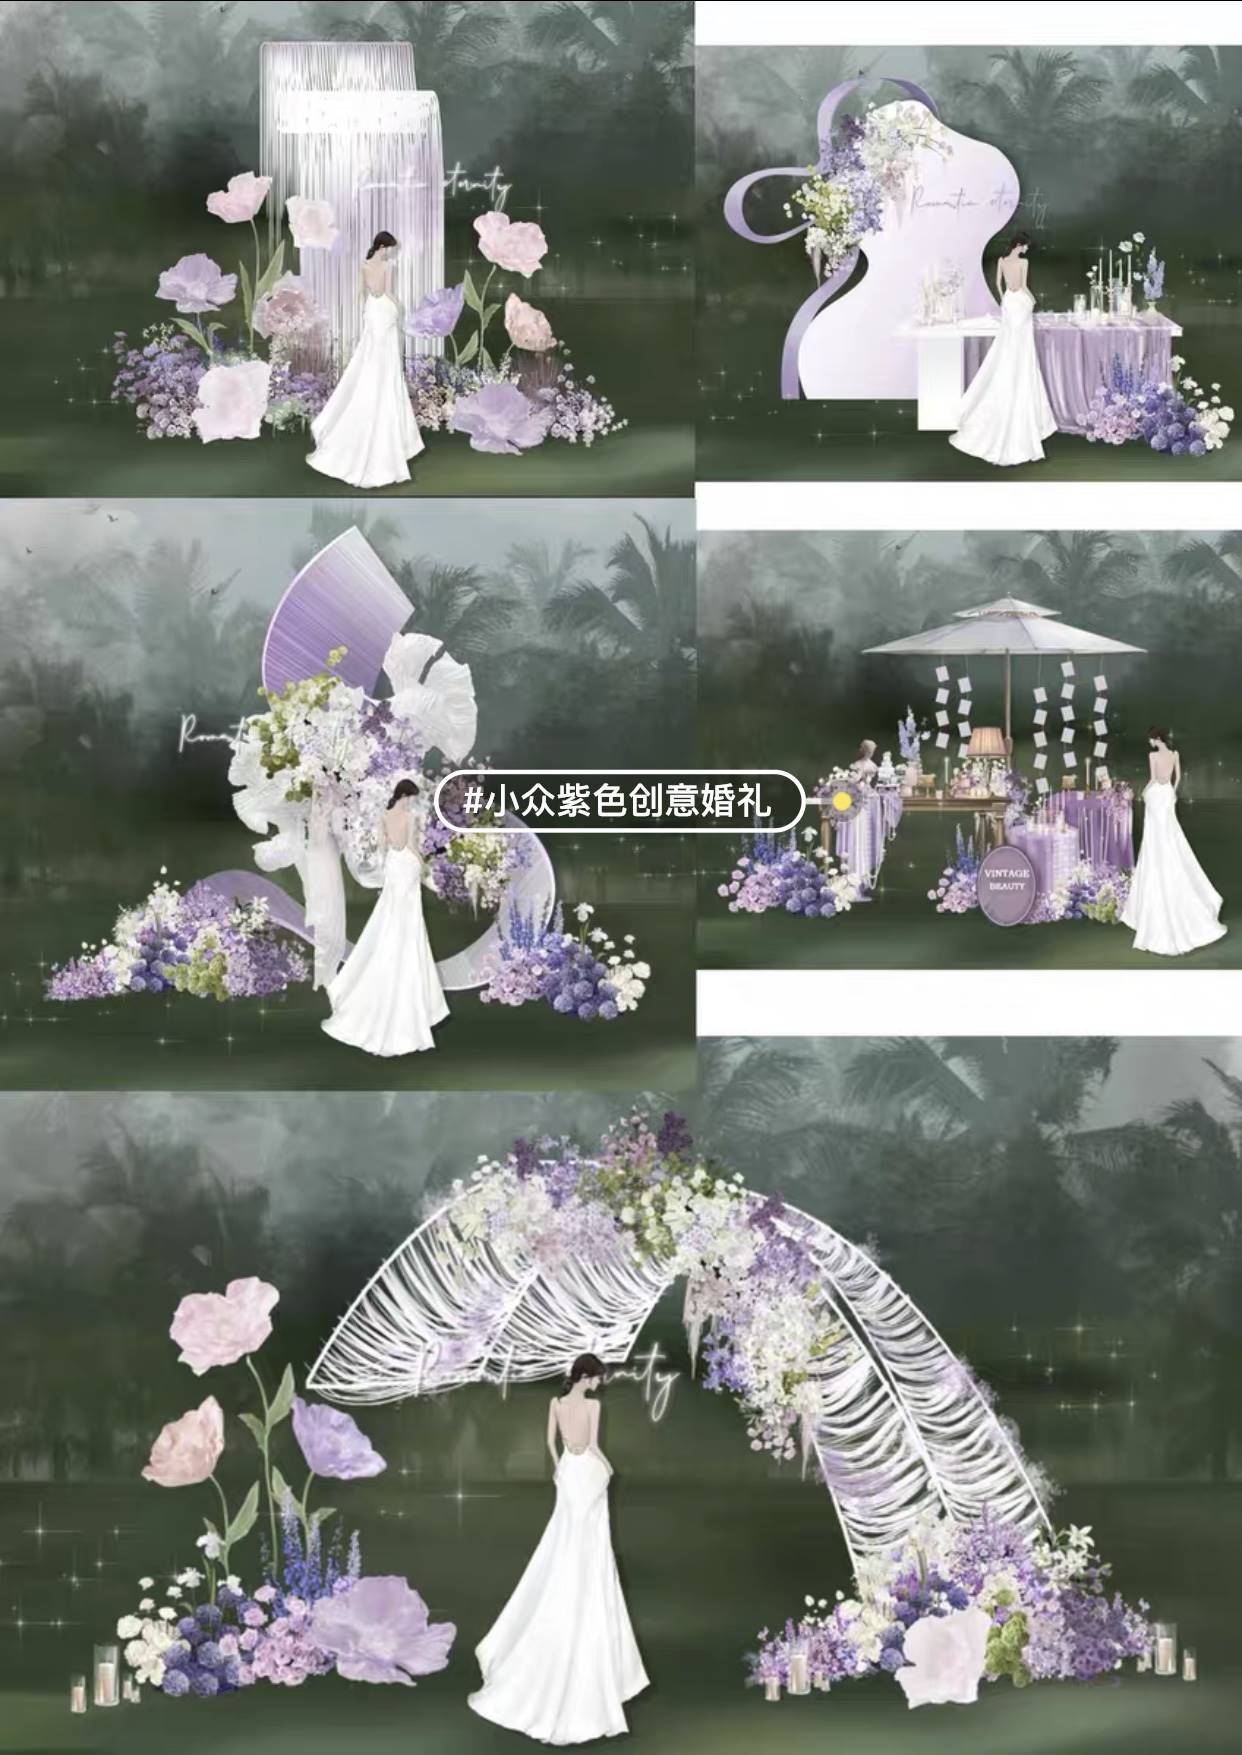 紫色浪漫小众婚礼背景效果图psd分层素材感兴趣的话点我想要和我